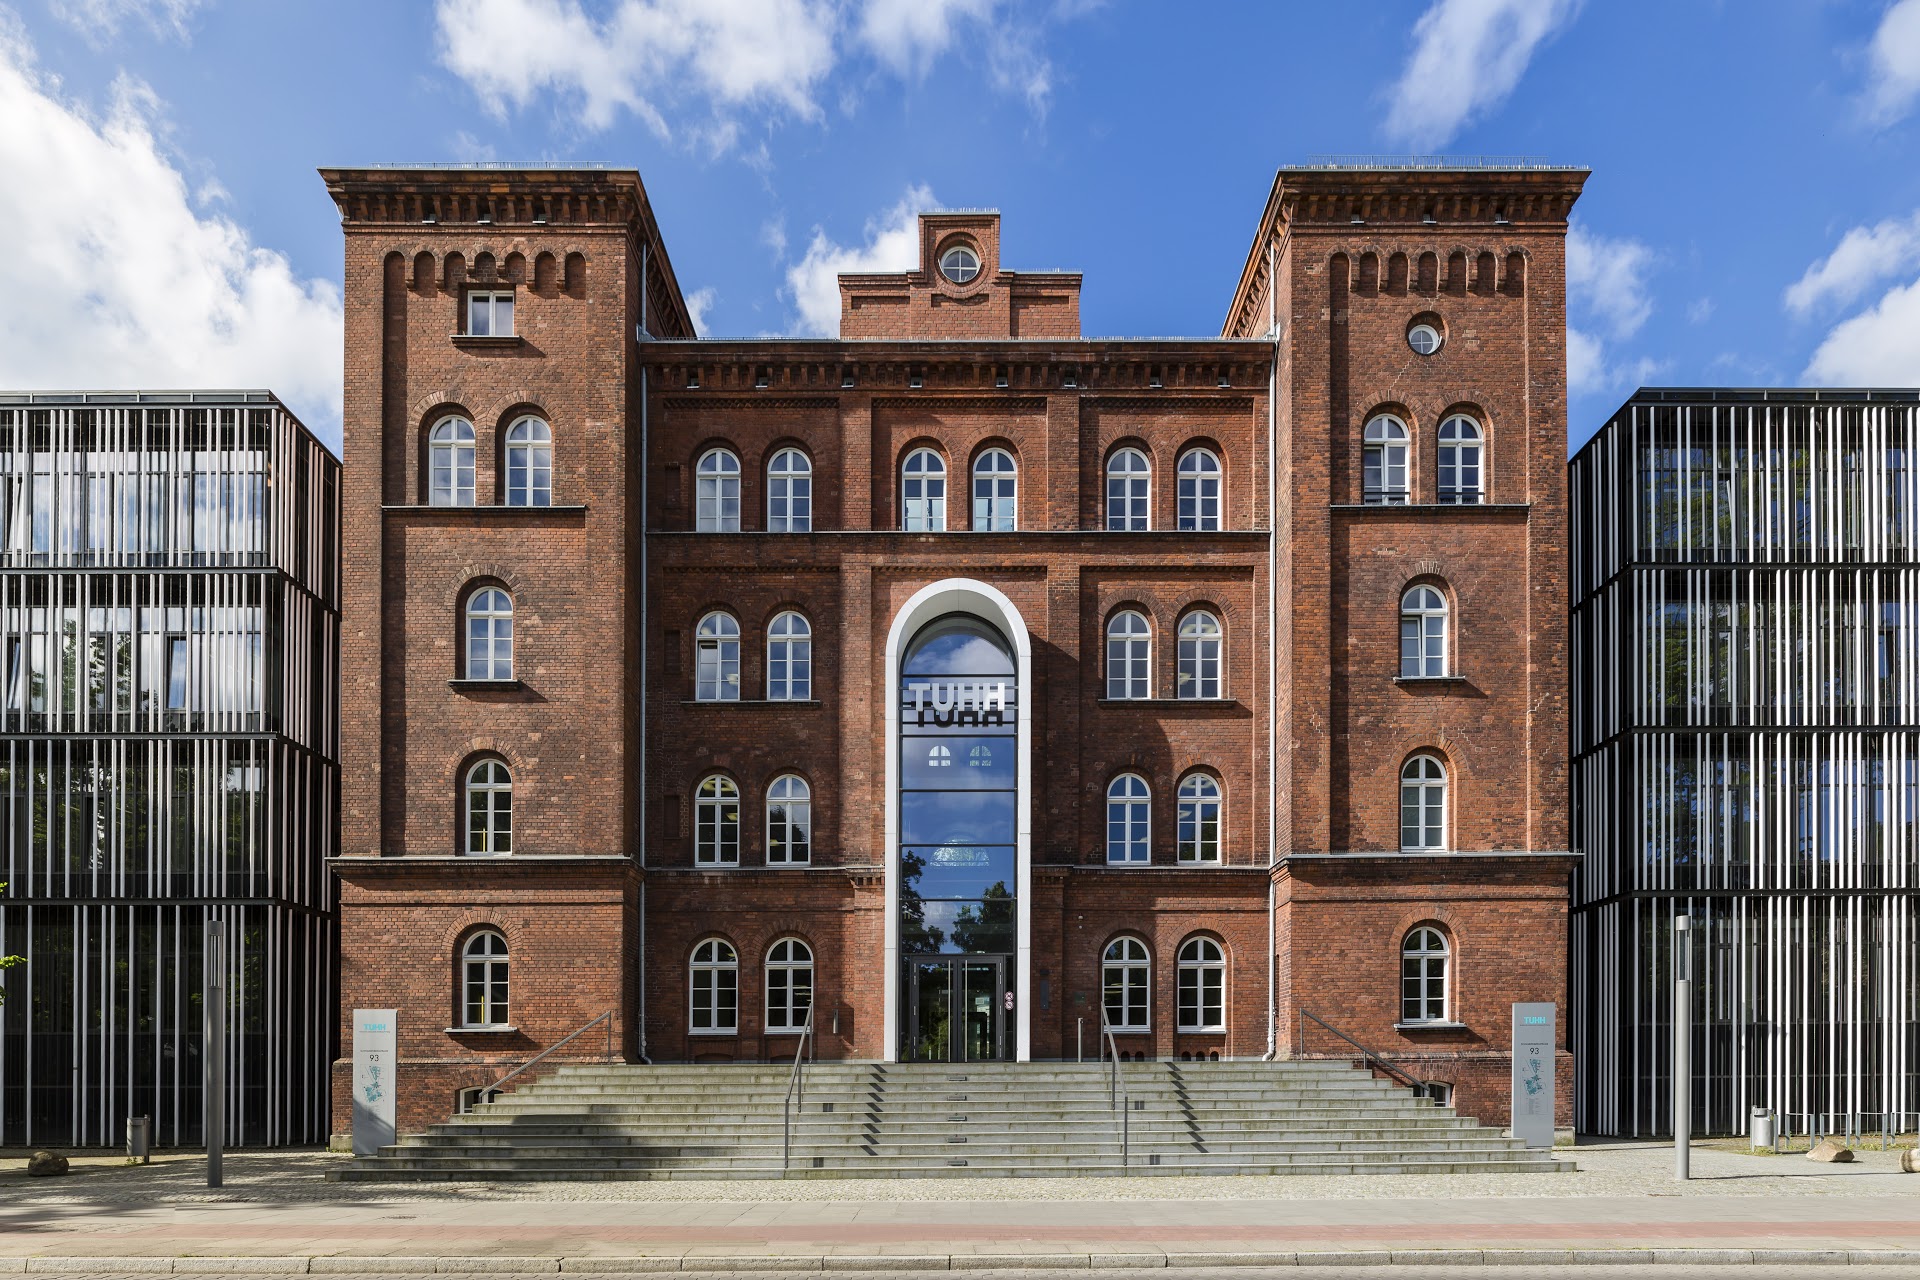 Гамбургский университет (германия) учебные программы и стоимость обучения, как поступить в universität hamburg россиянам и иностранцам в 2021 году